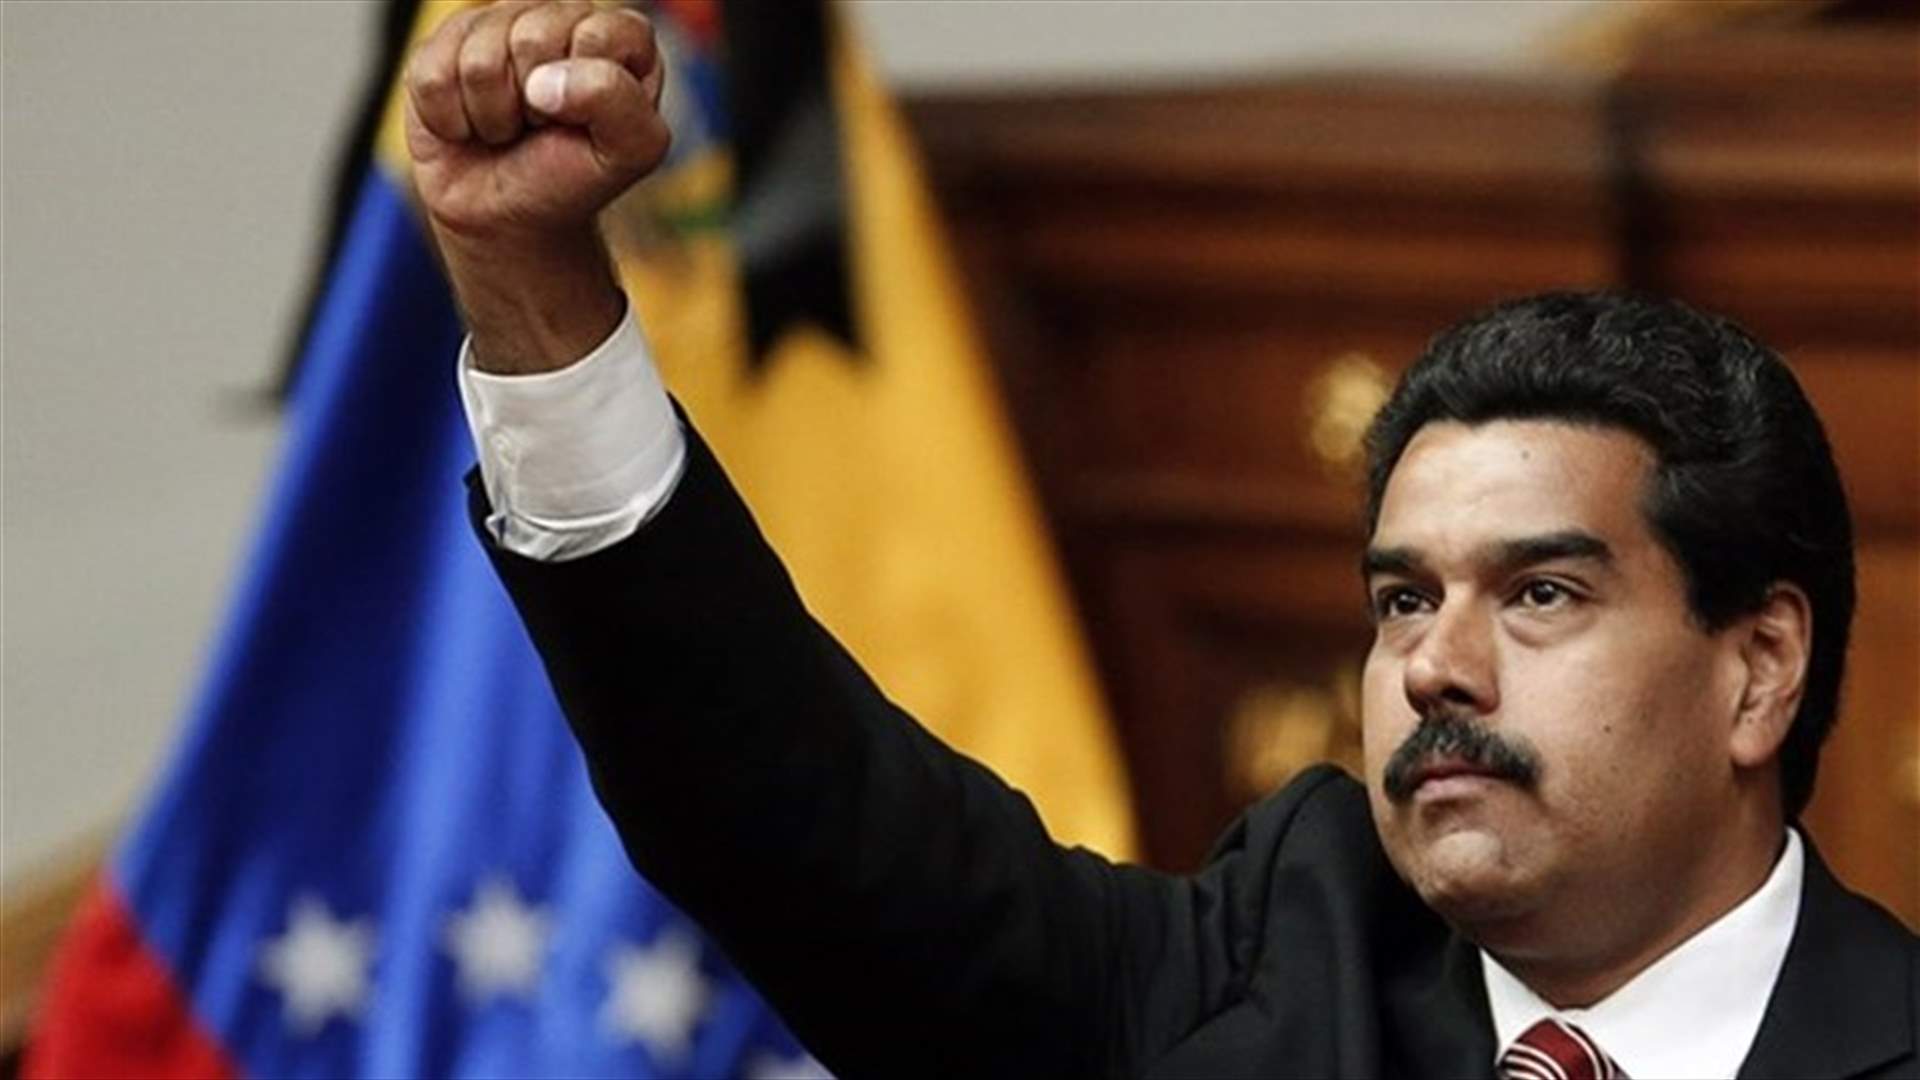 المحكمة العليا في فنزويلا تقضي بدستورية اعلان مادورو حال الطوارىء